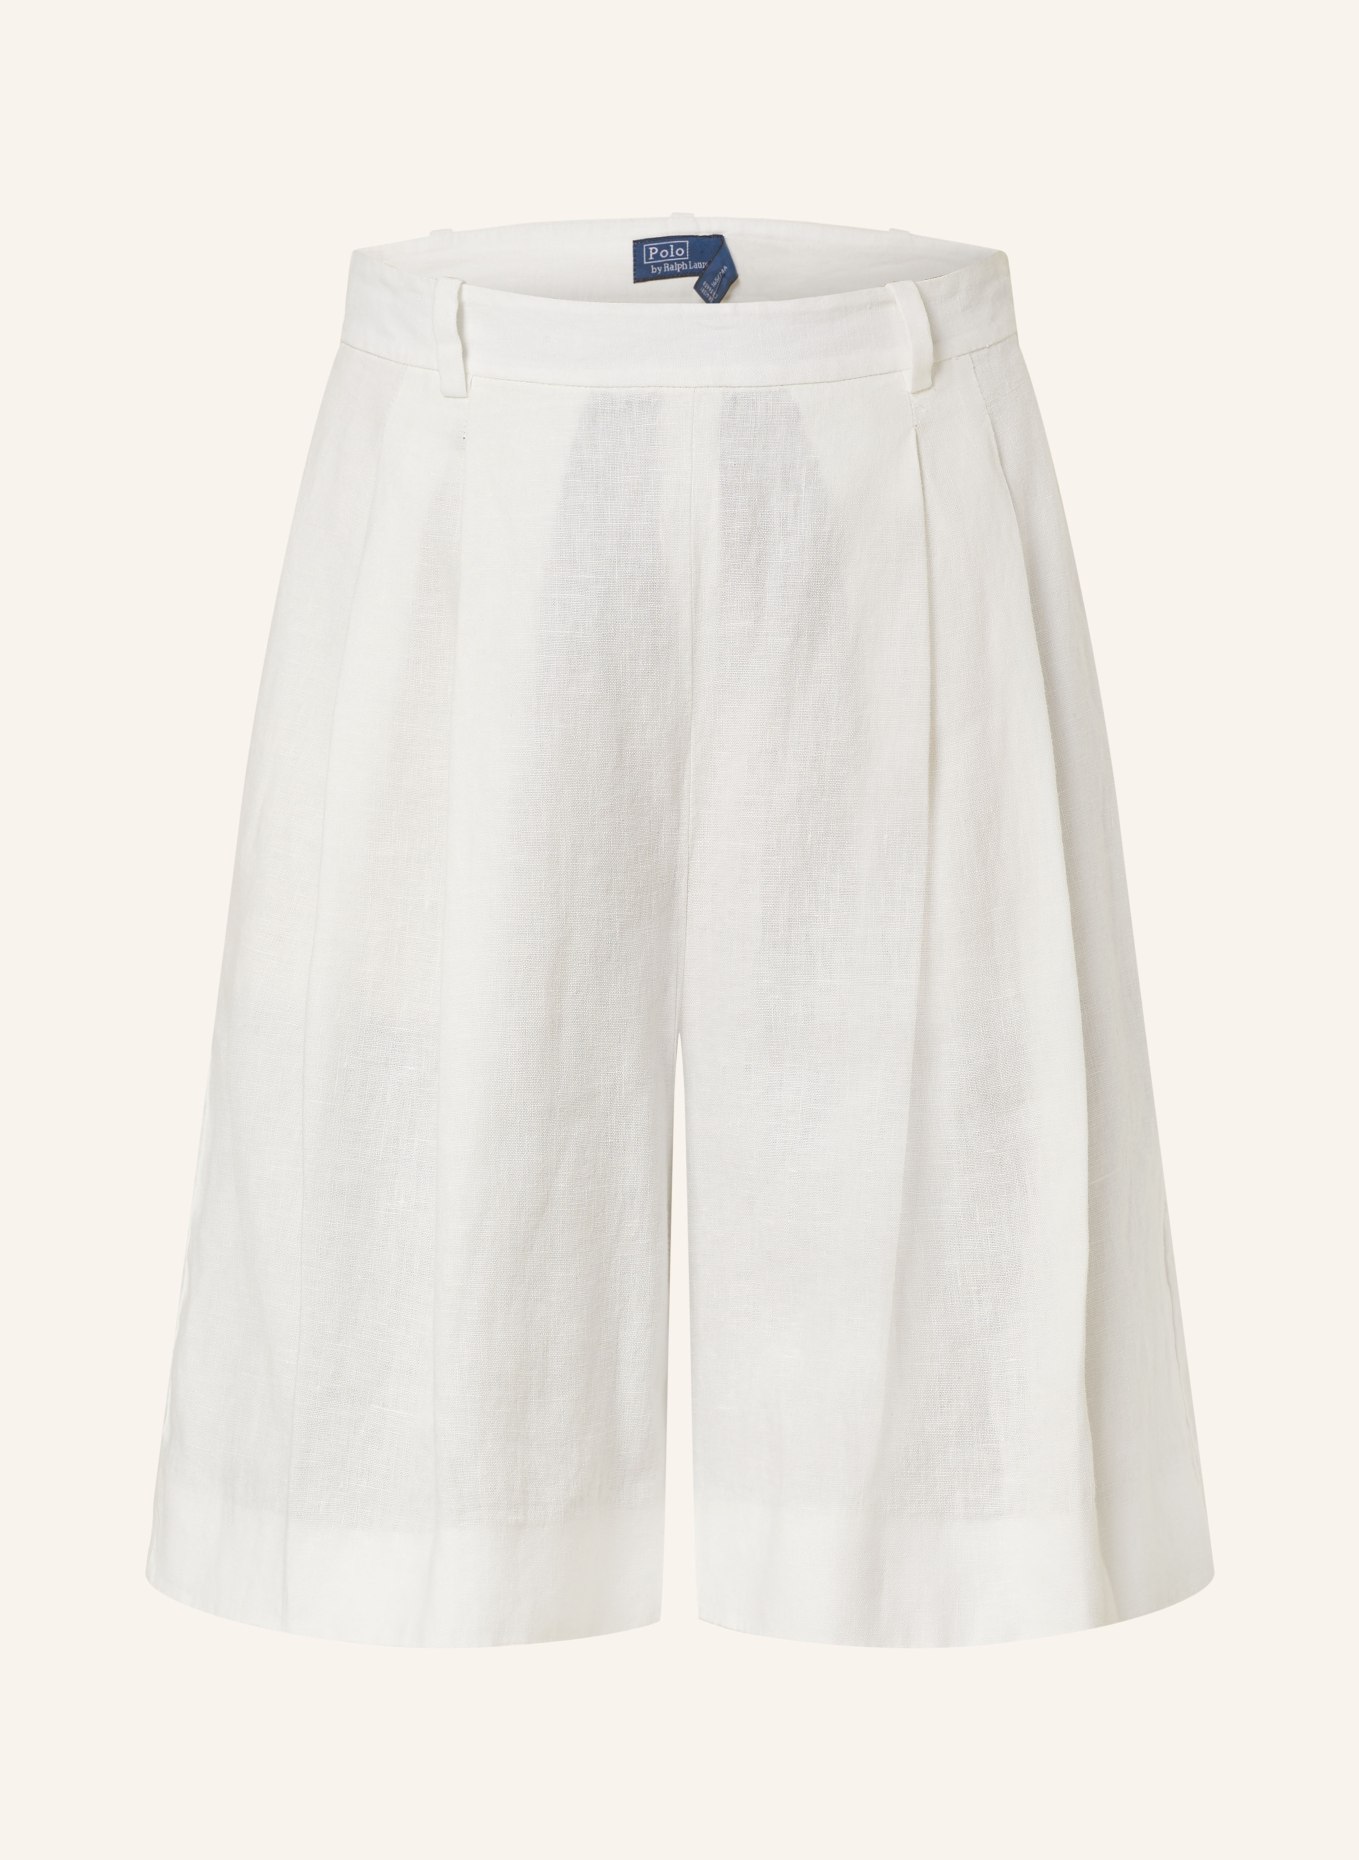 POLO RALPH LAUREN Linen shorts, Color: WHITE (Image 1)